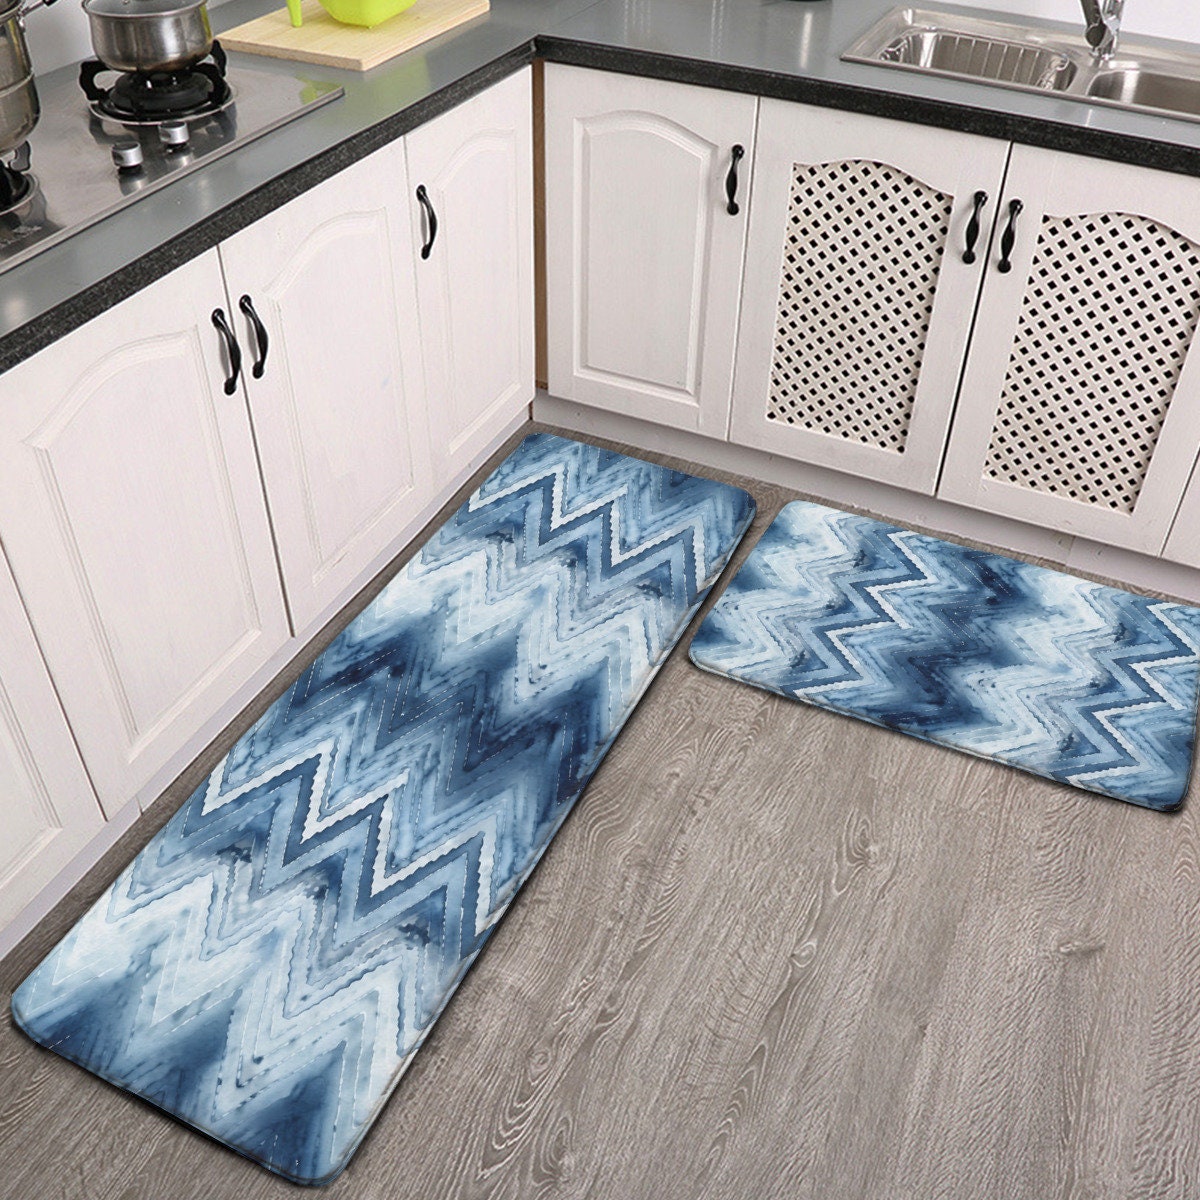 Boho Kitchen Foot Mat Indoor Door Mat Waterproof Non-Slip Kitchen Mats and  Rugs Comfort Rug for Kitchen Floor Home Office Sink Laundry(Black)